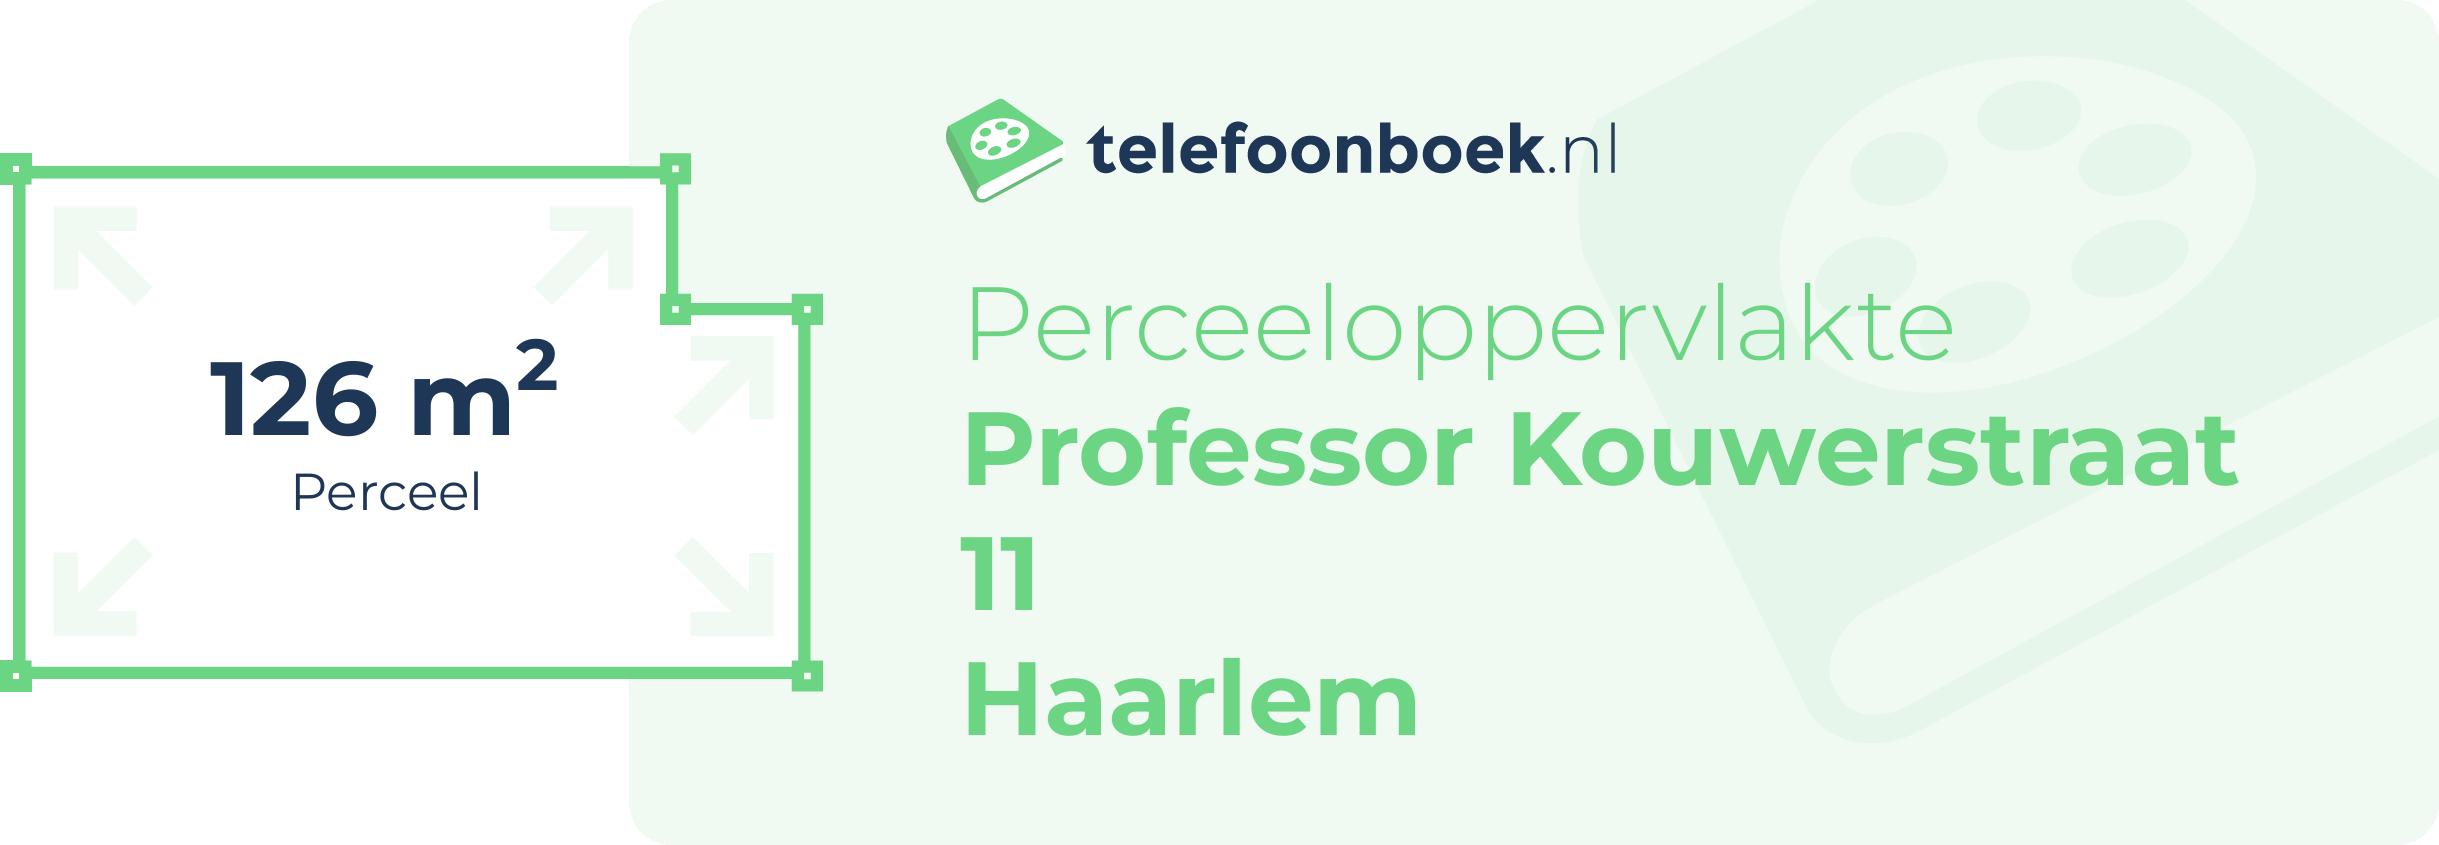 Perceeloppervlakte Professor Kouwerstraat 11 Haarlem